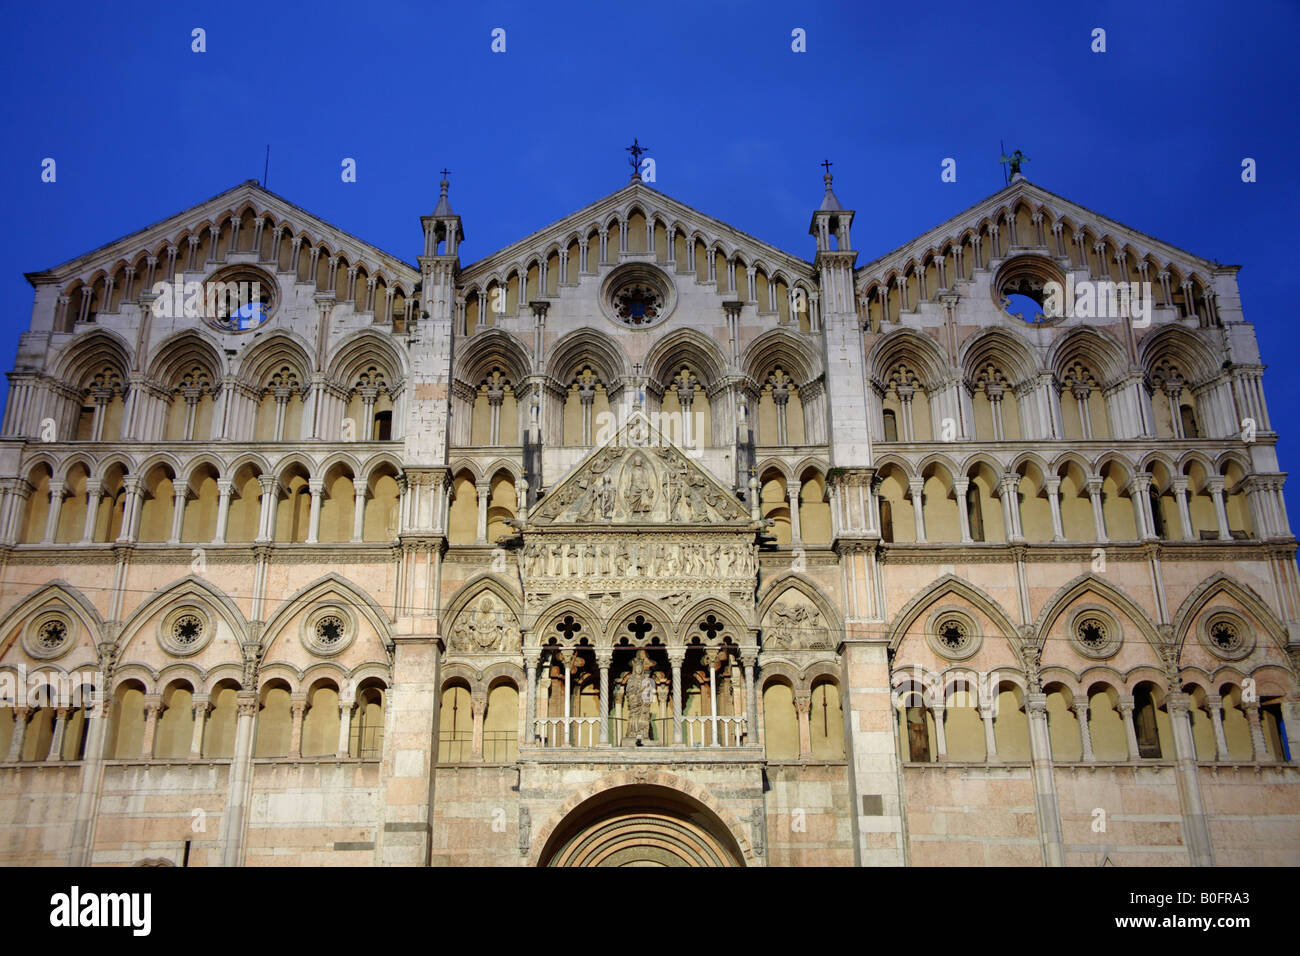 Facade of San Giorgio cathedral, Ferrara, Italy Stock Photo